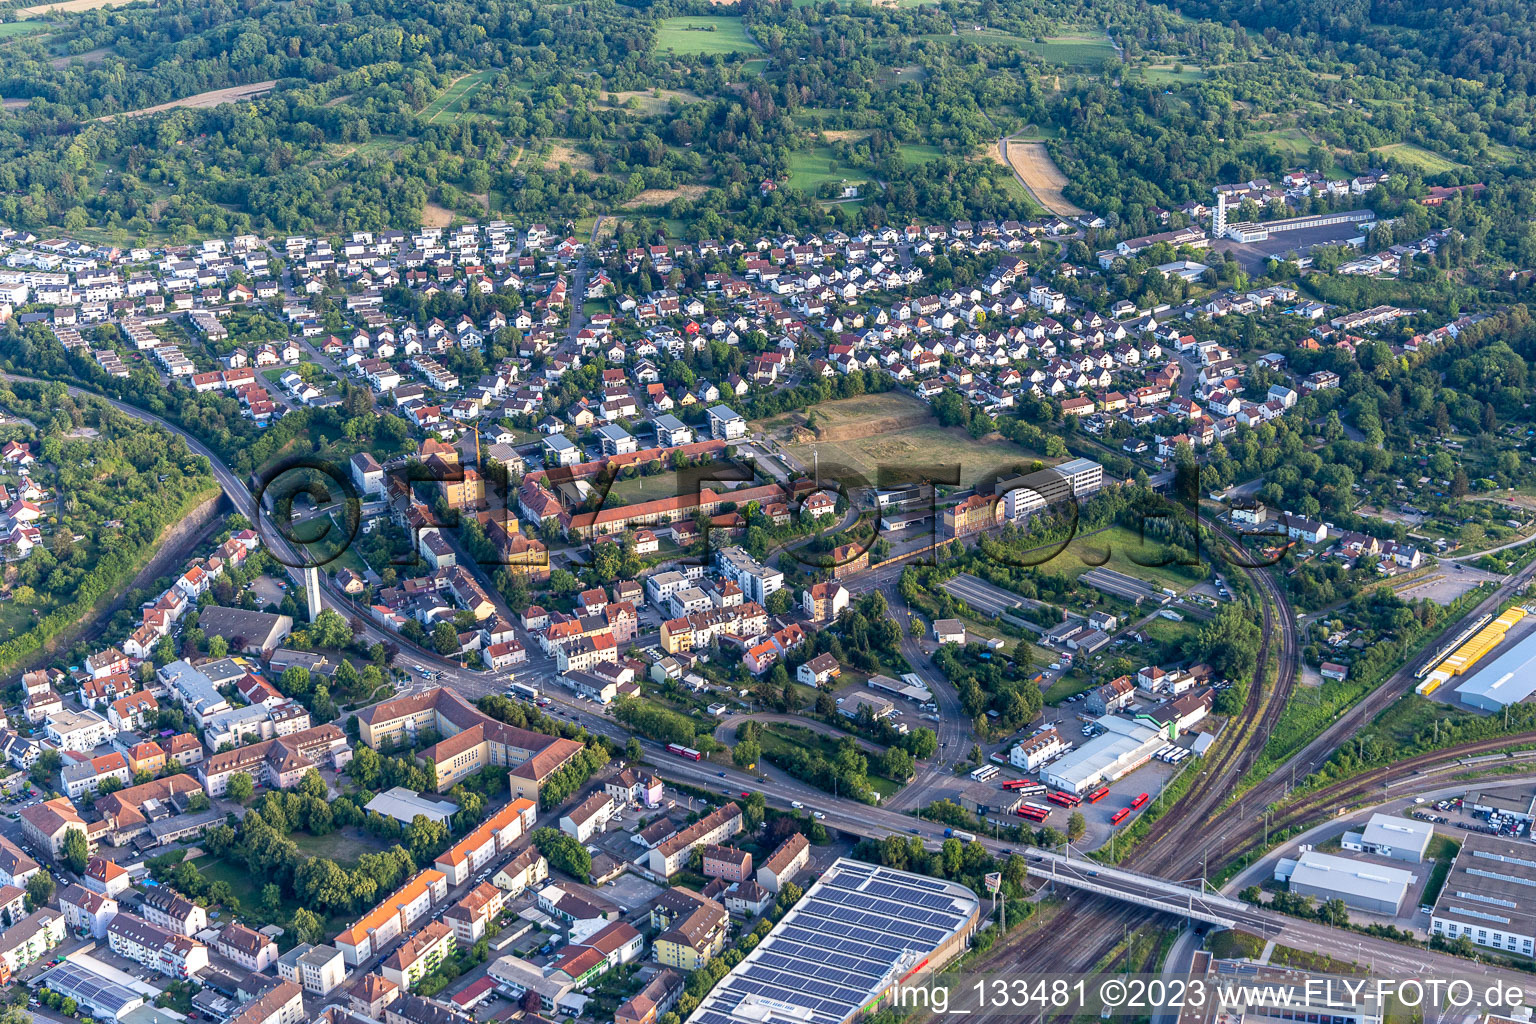 Efeu Campus in Bruchsal im Bundesland Baden-Württemberg, Deutschland